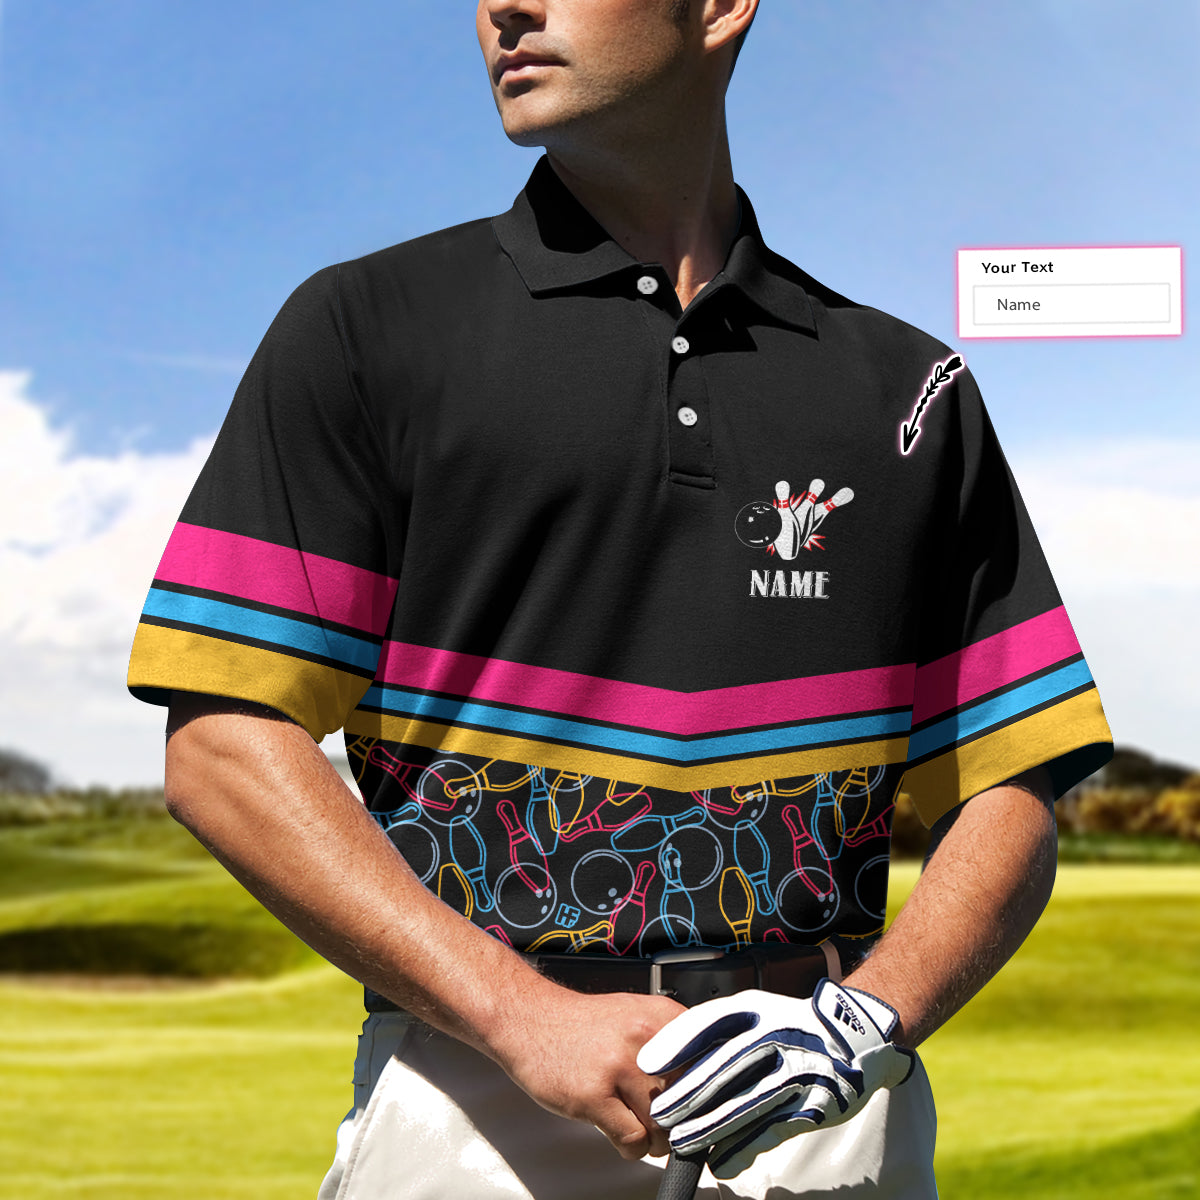 Personalized Bowling Team Custom Polo Shirt/ Customized Bowling Shirt For Bowlers/ Colorful Bowling Shirt Coolspod